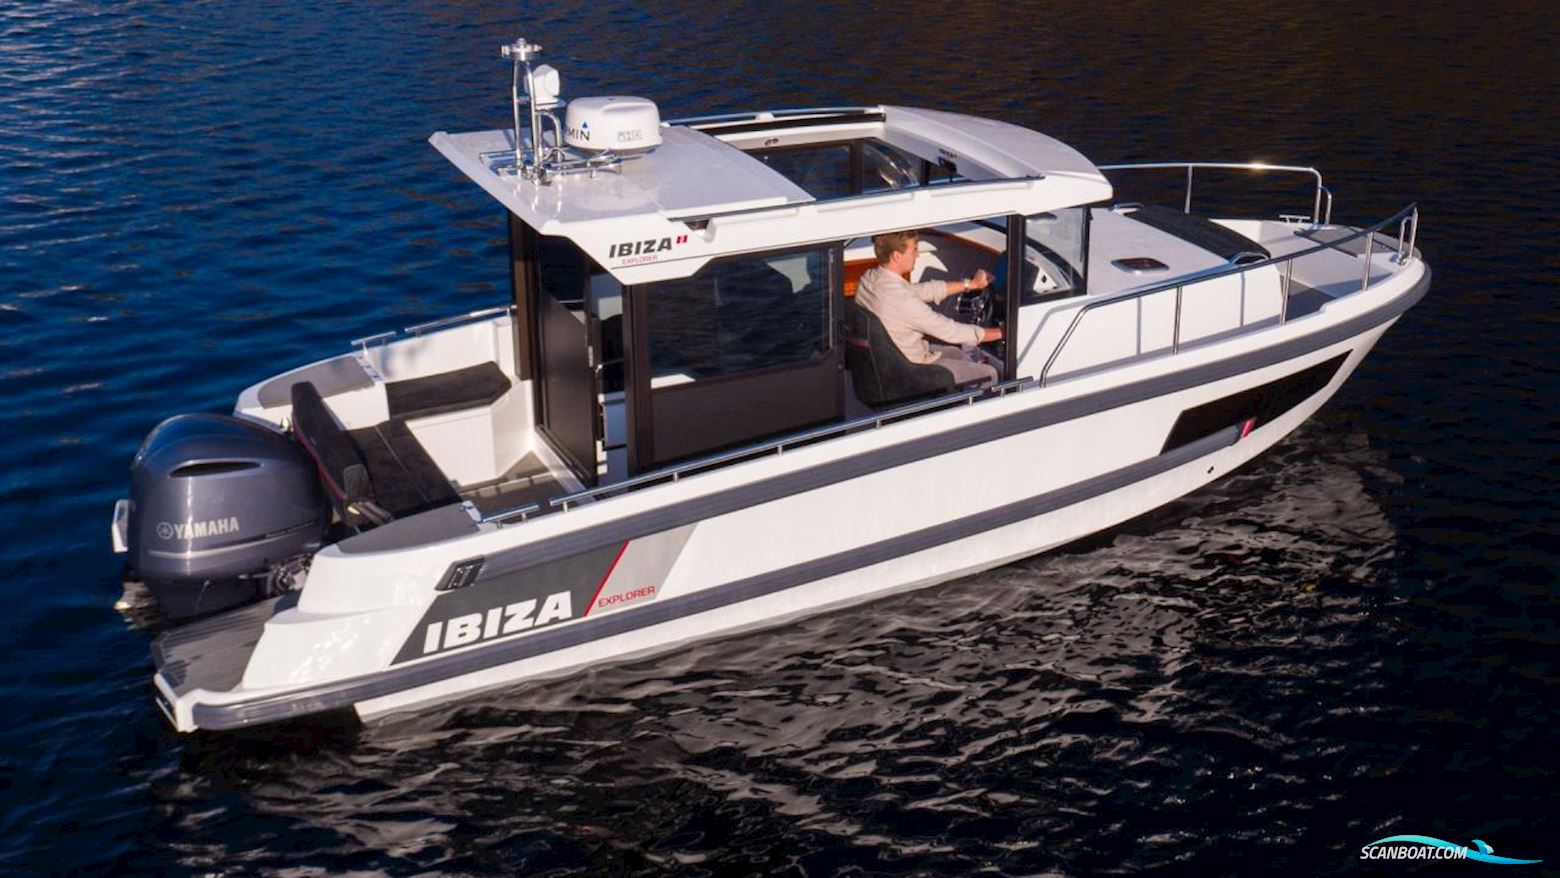 Ibiza 811 EXPLORER Motor boat 2021, with Yamaha engine, Sweden